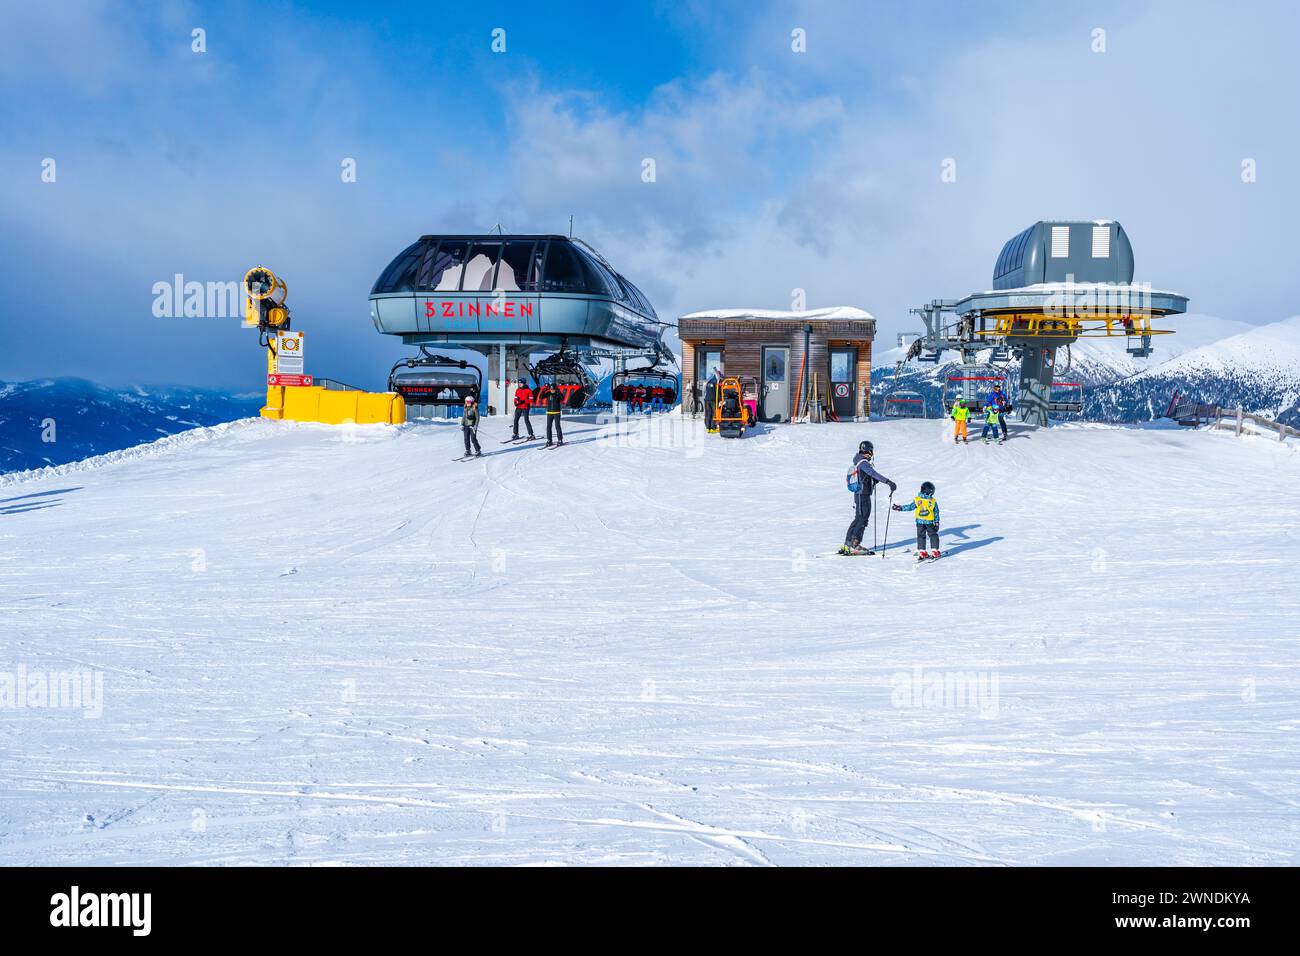 KRONPLATZ, ITALIE - 23 JANVIER 2024 : skieurs et snowboarders au sommet d'une montagne à la Kronplatz, une destination de sports d'hiver populaire en Italie. Banque D'Images